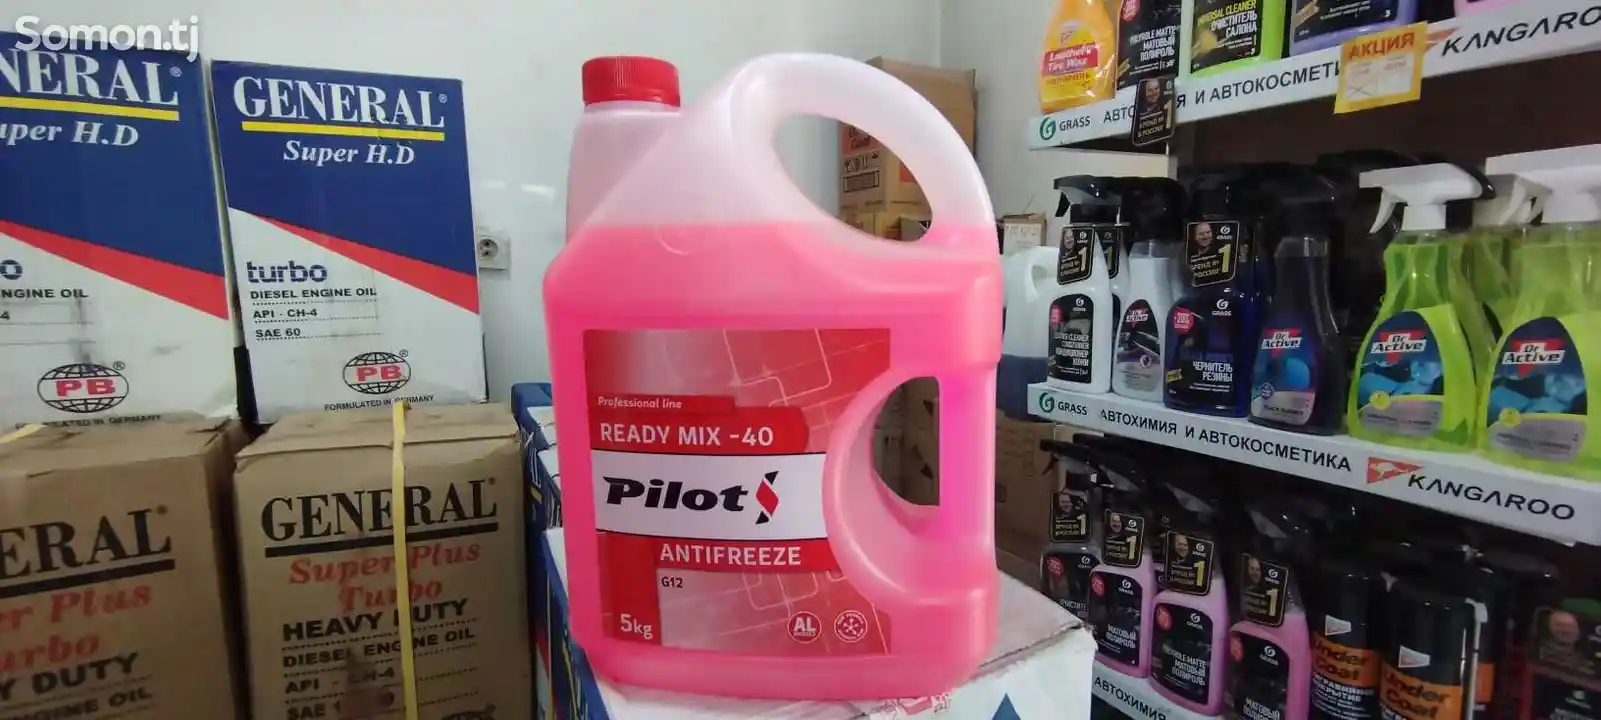 Антифриз Pilot -40-1